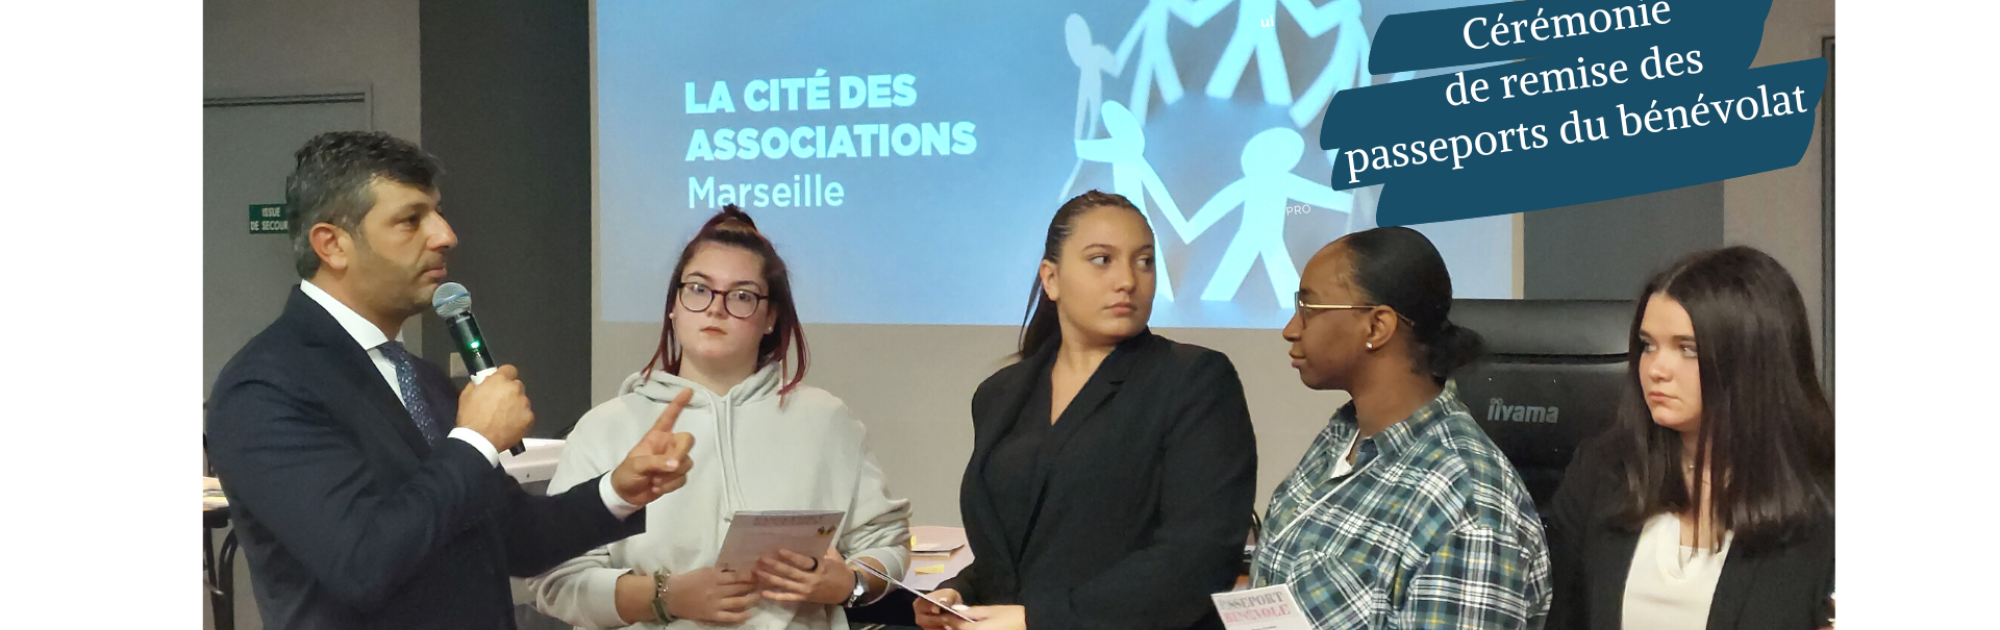 Les 1ères AEPA reçoivent leur passeport bénévole à la mairie de Marseille